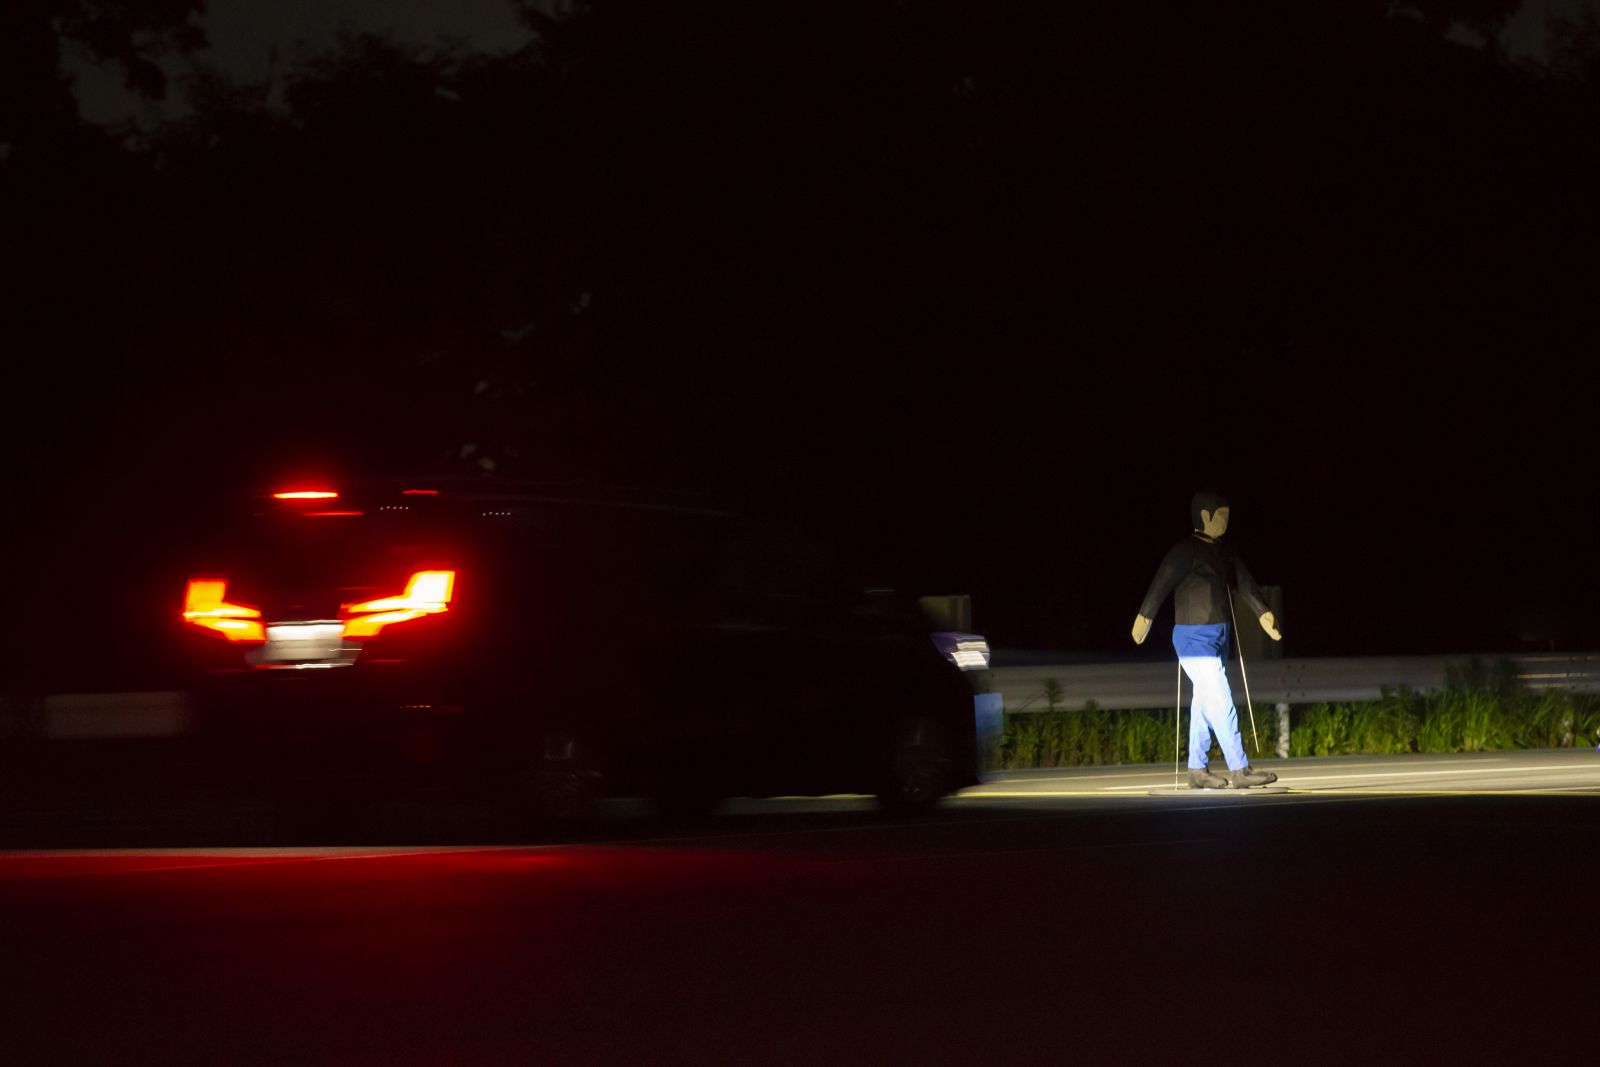 ▲暗い道ではライトを点灯していても歩行者を認識することが難しいこともしばしば